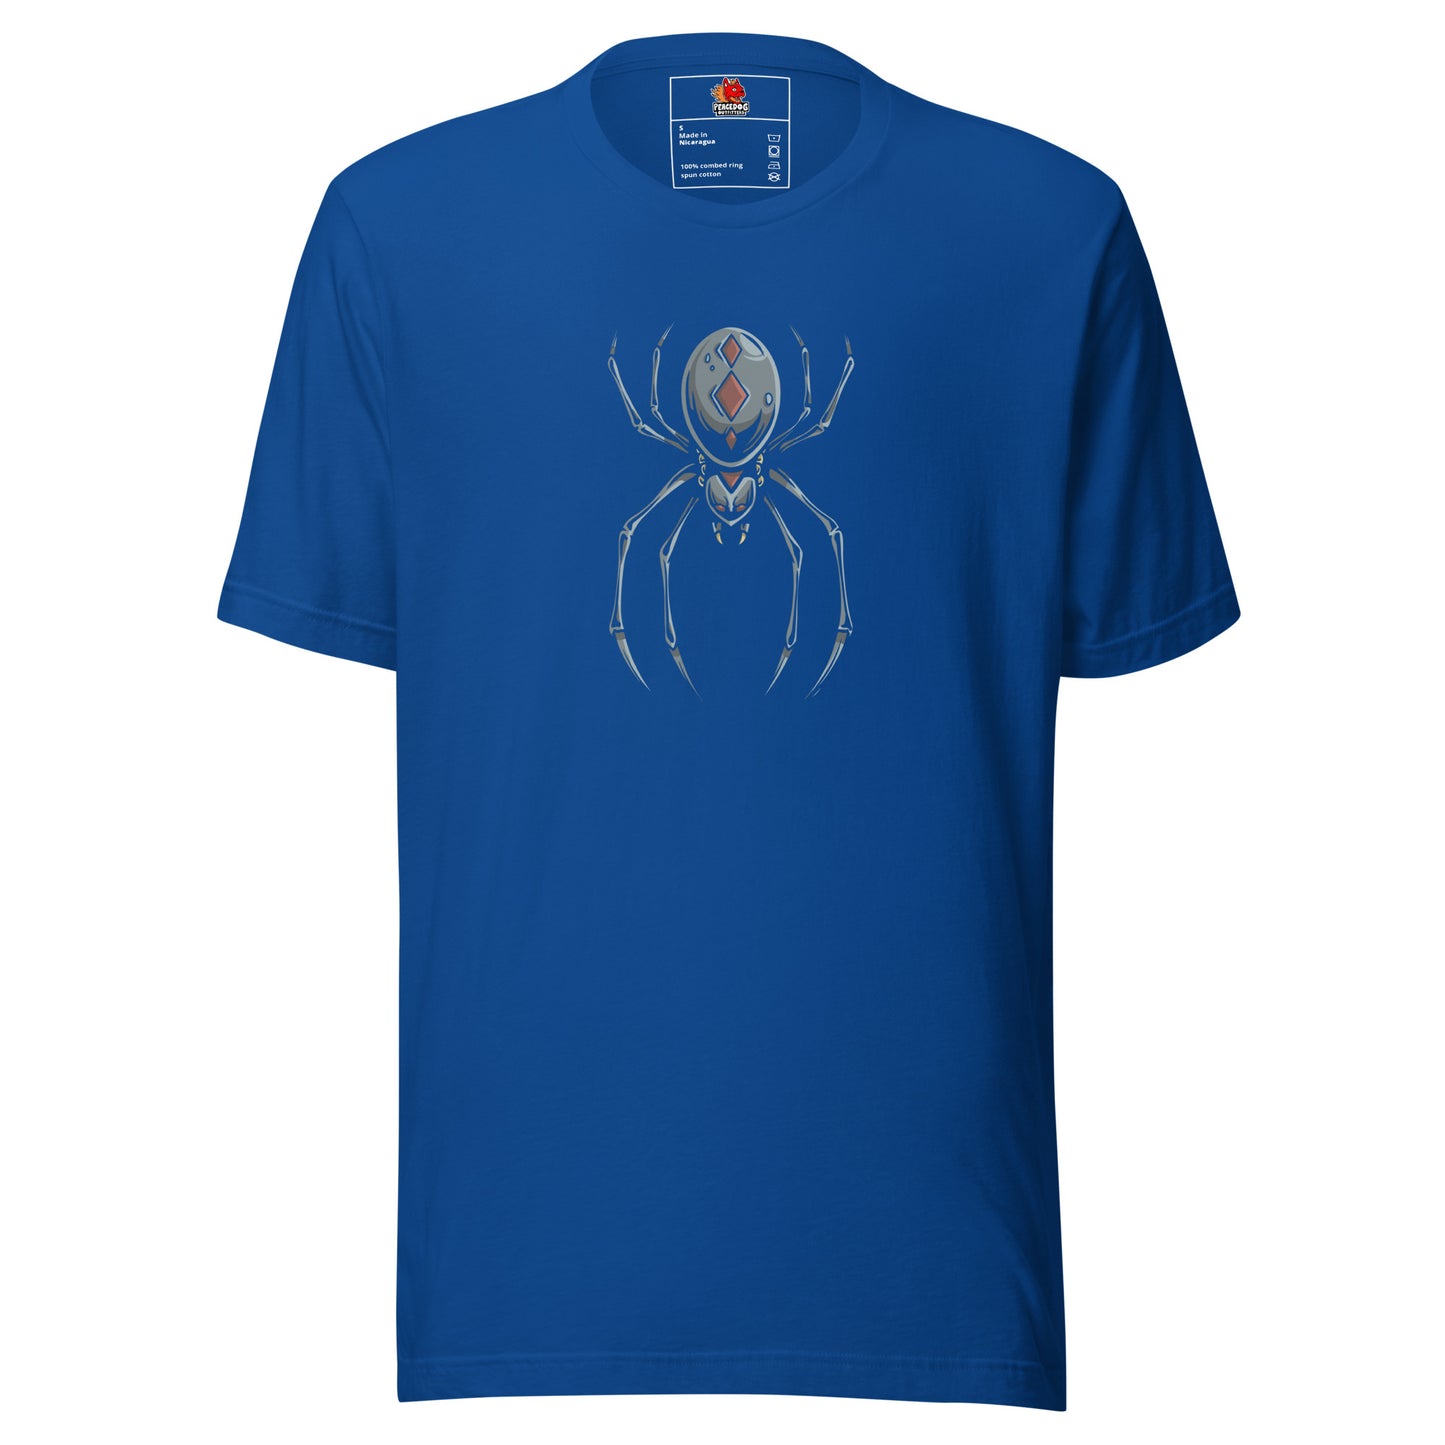 Black Widow Spider T-Shirt